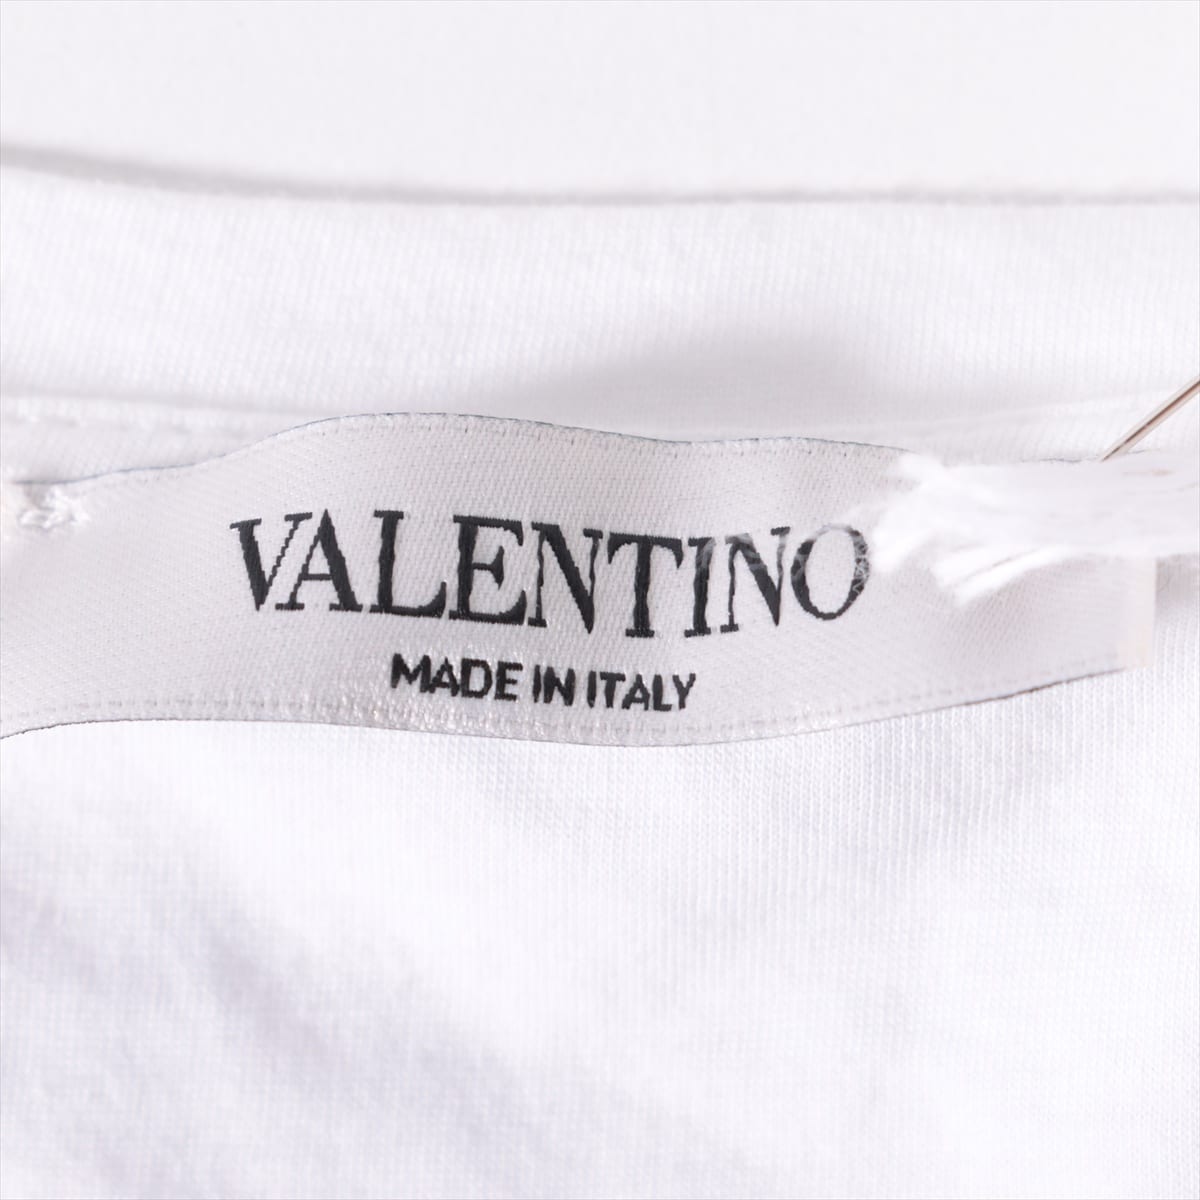 ヴァレンティノ×アンダーカバー 19AW コットン Tシャツ M メンズ ホワイト  スカル ロゴ